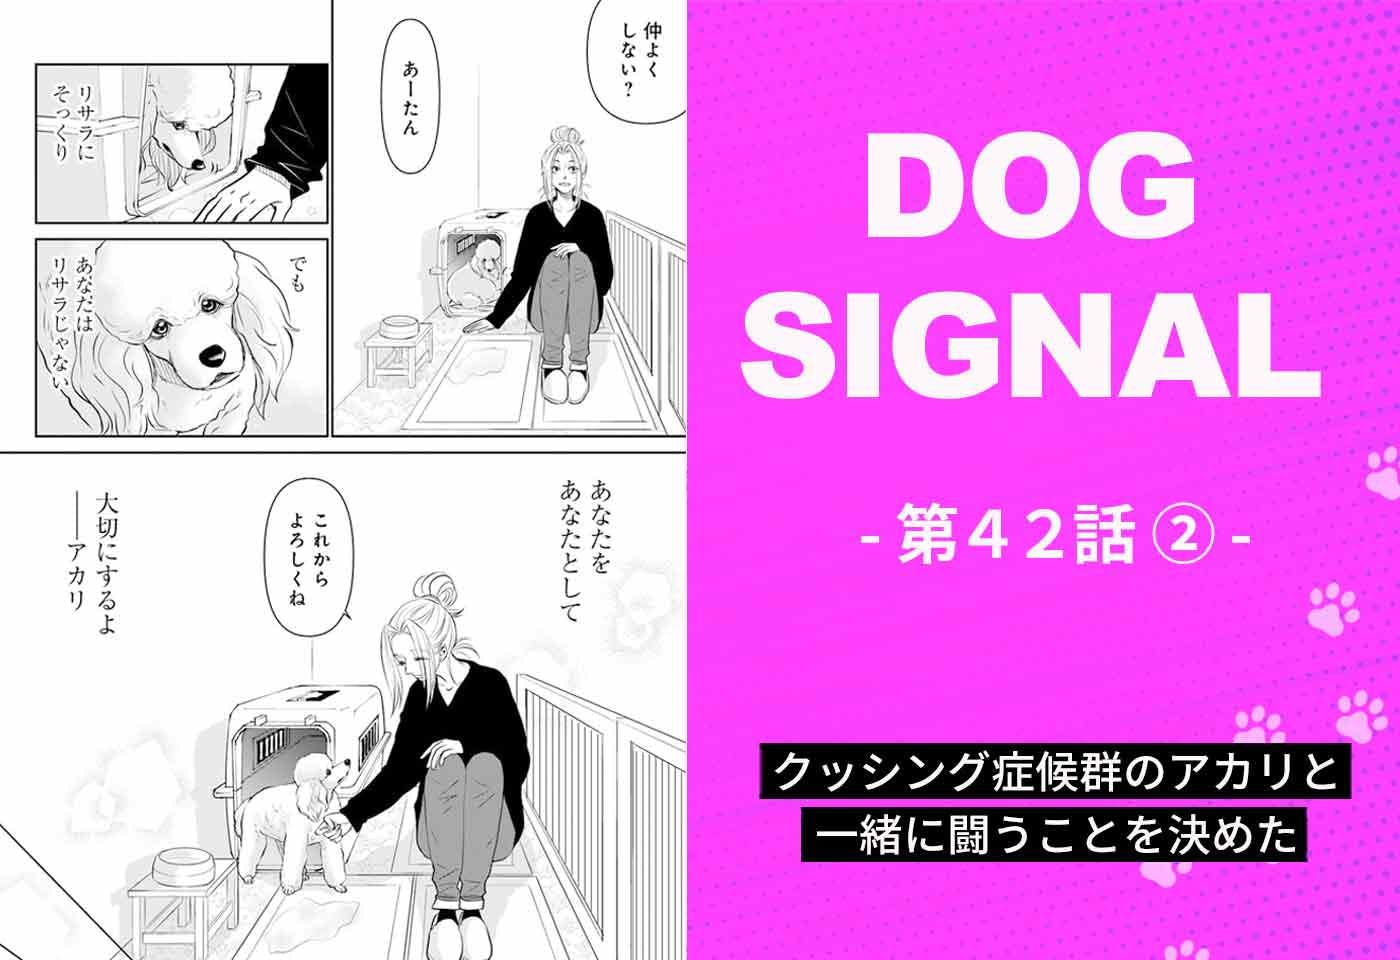 漫画『DOG SIGNAL（ドッグシグナル）』42話目2/4　“クッシング症候群”の成犬・アカリを迎える